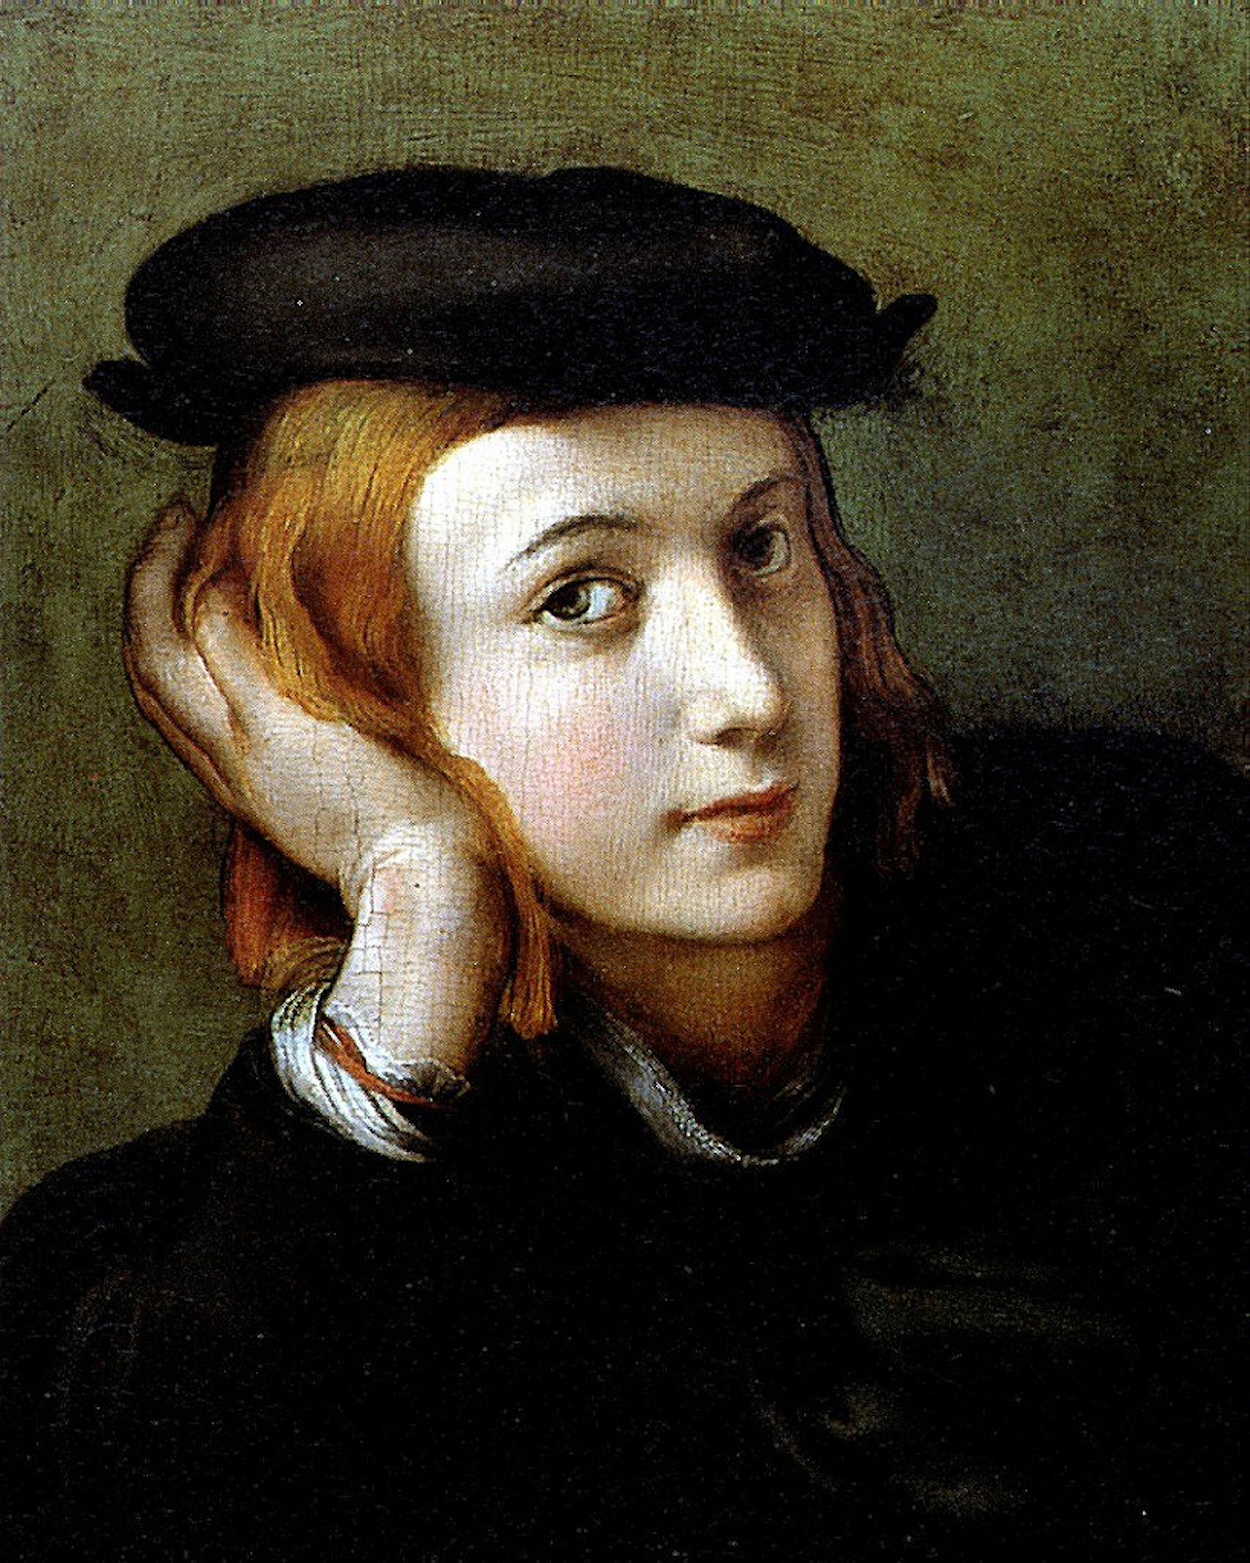 Antonio da Correggio - August 1489 - 5. März 1534